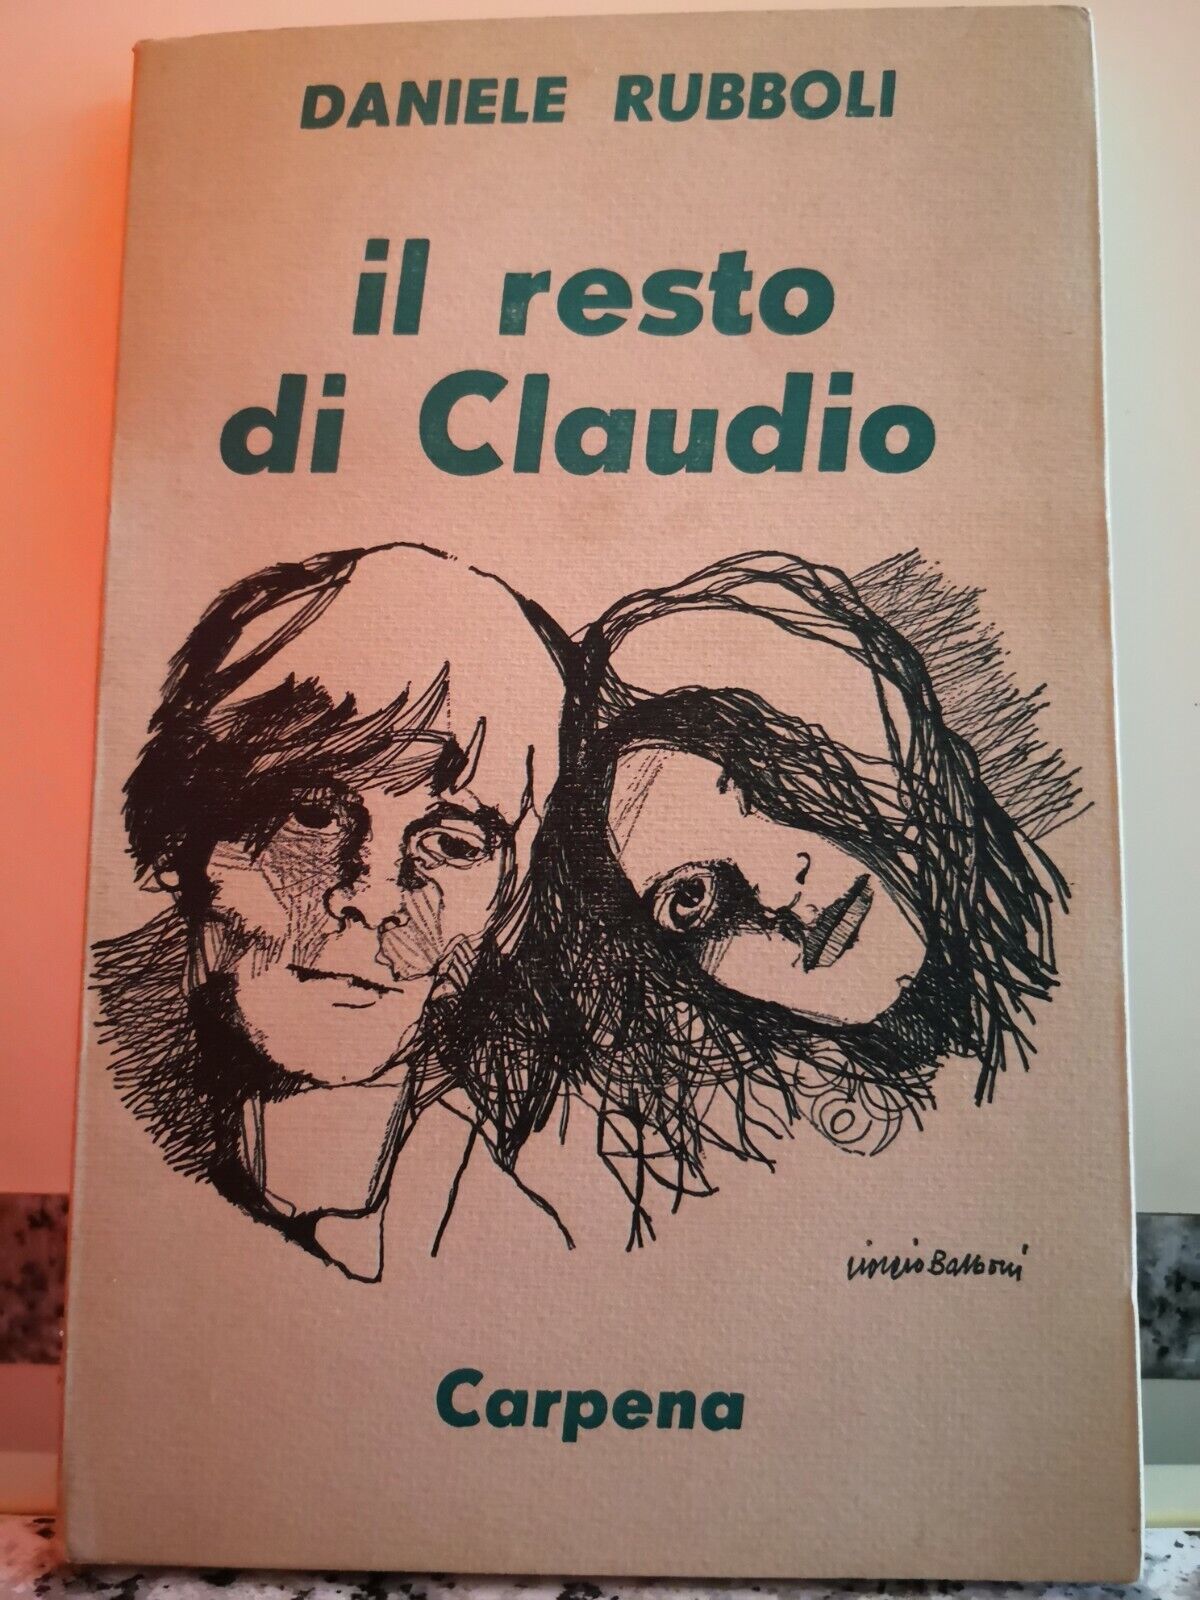  Il Resto di Claudio  di Daniele Rubboli,  Carpena  1973-F